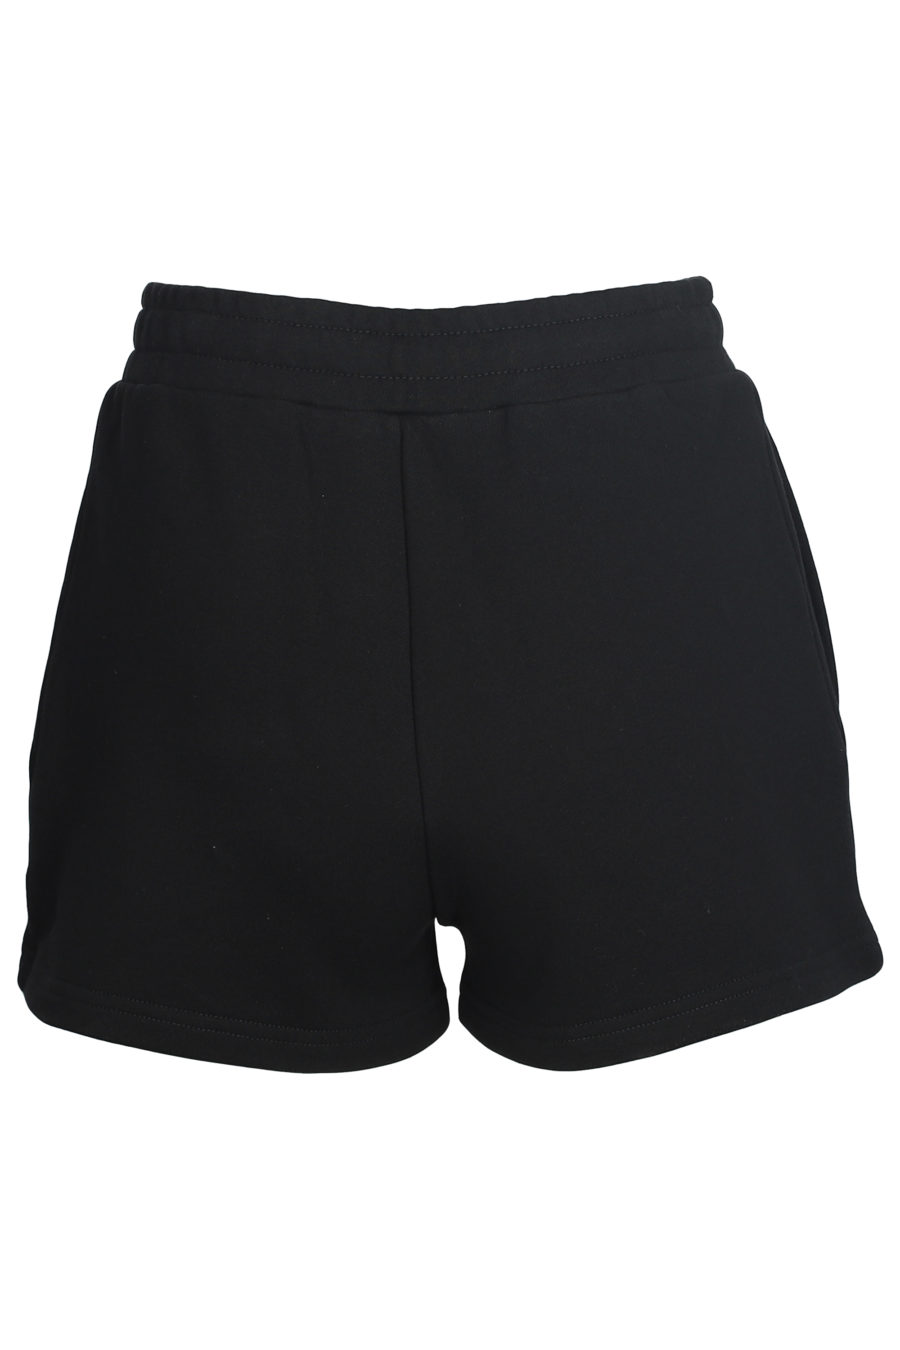 Pantalón corto negro con logo - IMG 5599